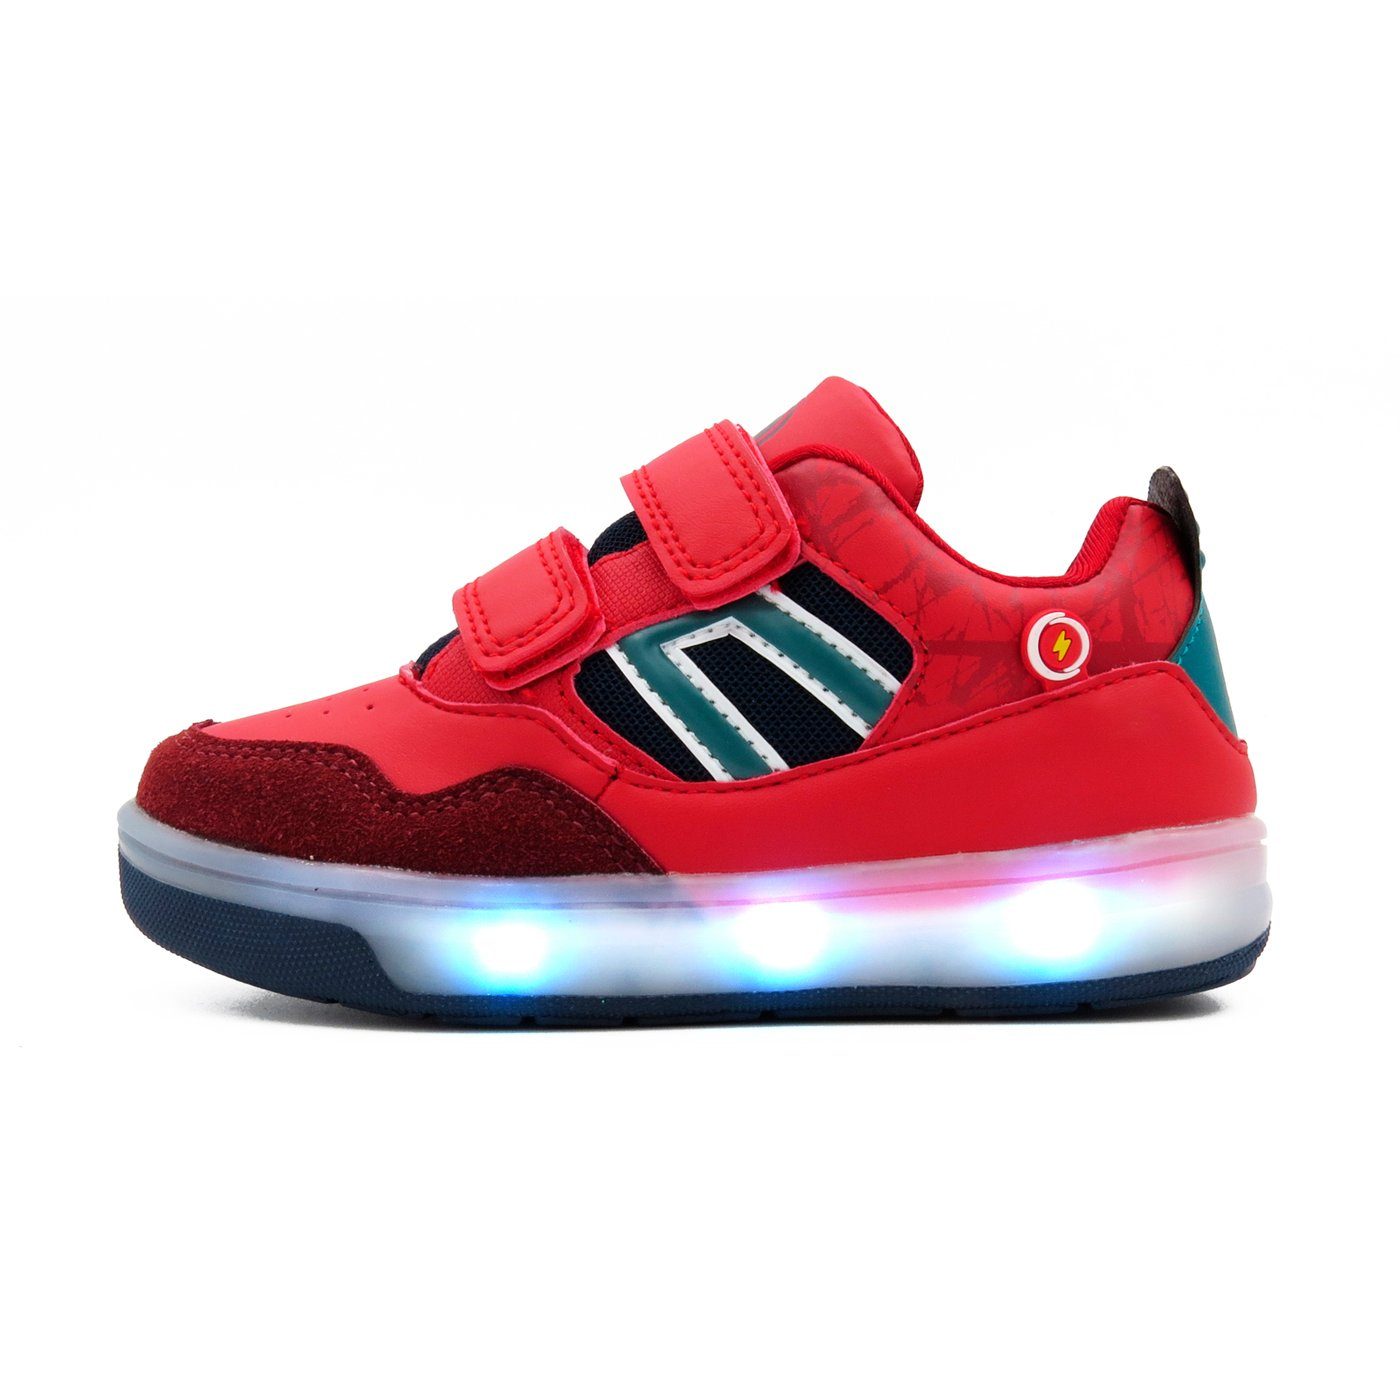 Leuchtsohle, LED Material, Sneaker atmungsaktive LED Klettverschluss Atumgsaktiv Sneaker mit Breezy BREEZY LIGHT Schuhe 2196091 Leuchtsohle